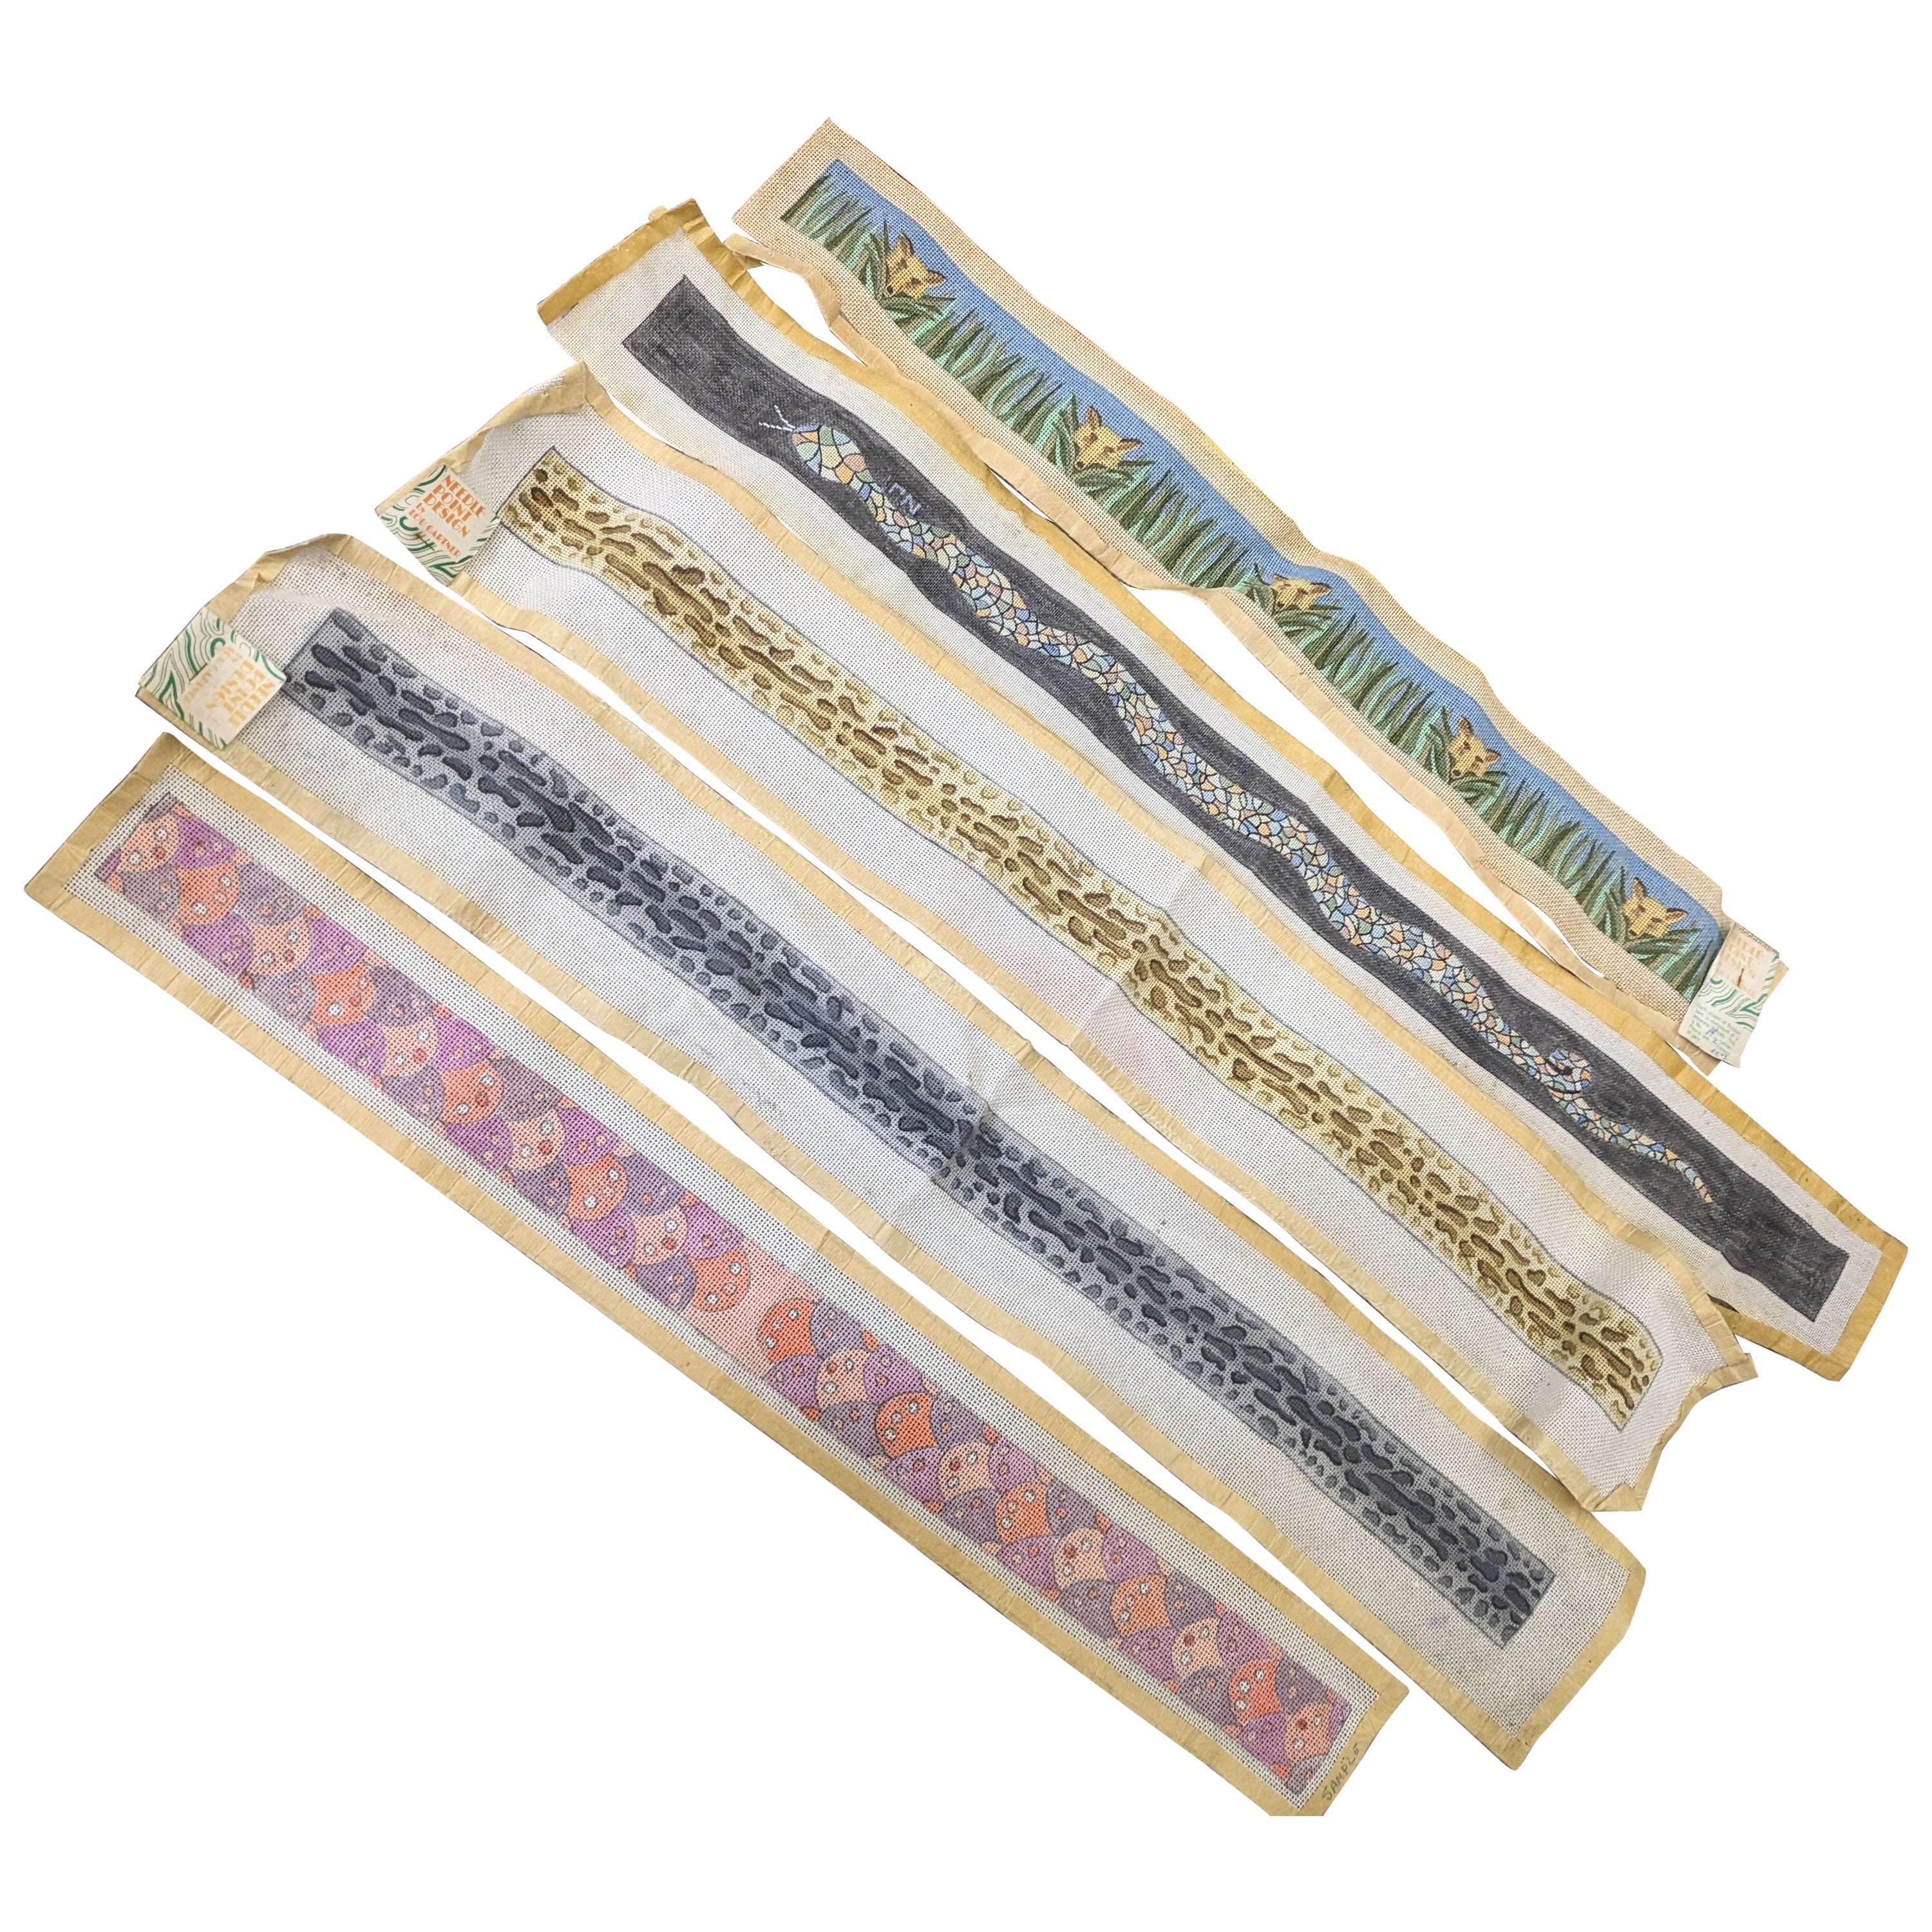 Lou Gartner Needlepoint Blanks, Belts/Straps For Sale